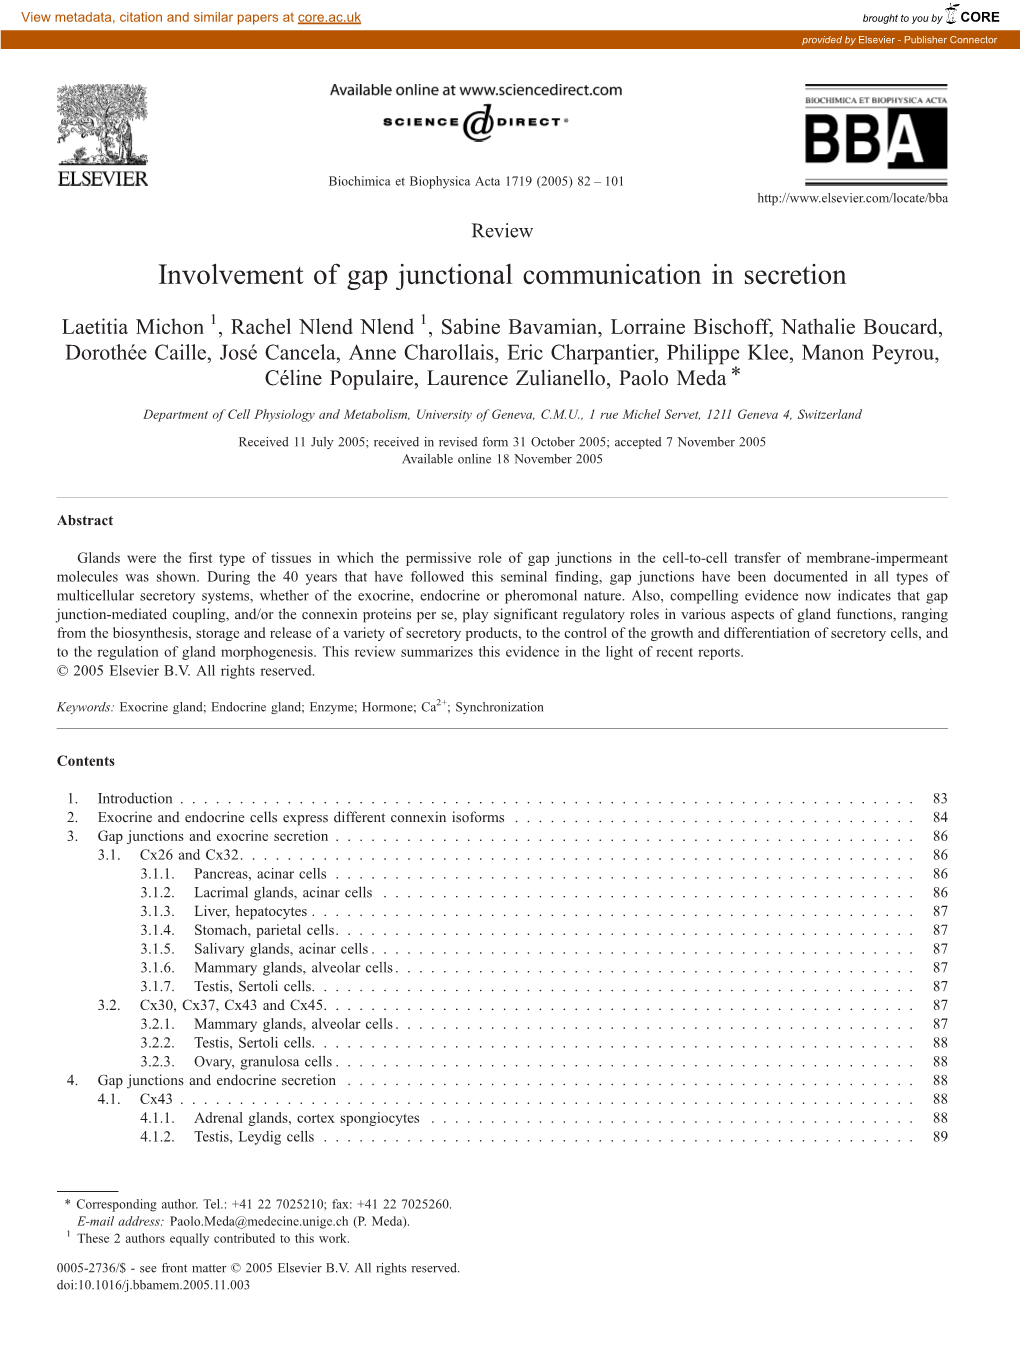 Involvement of Gap Junctional Communication in Secretion